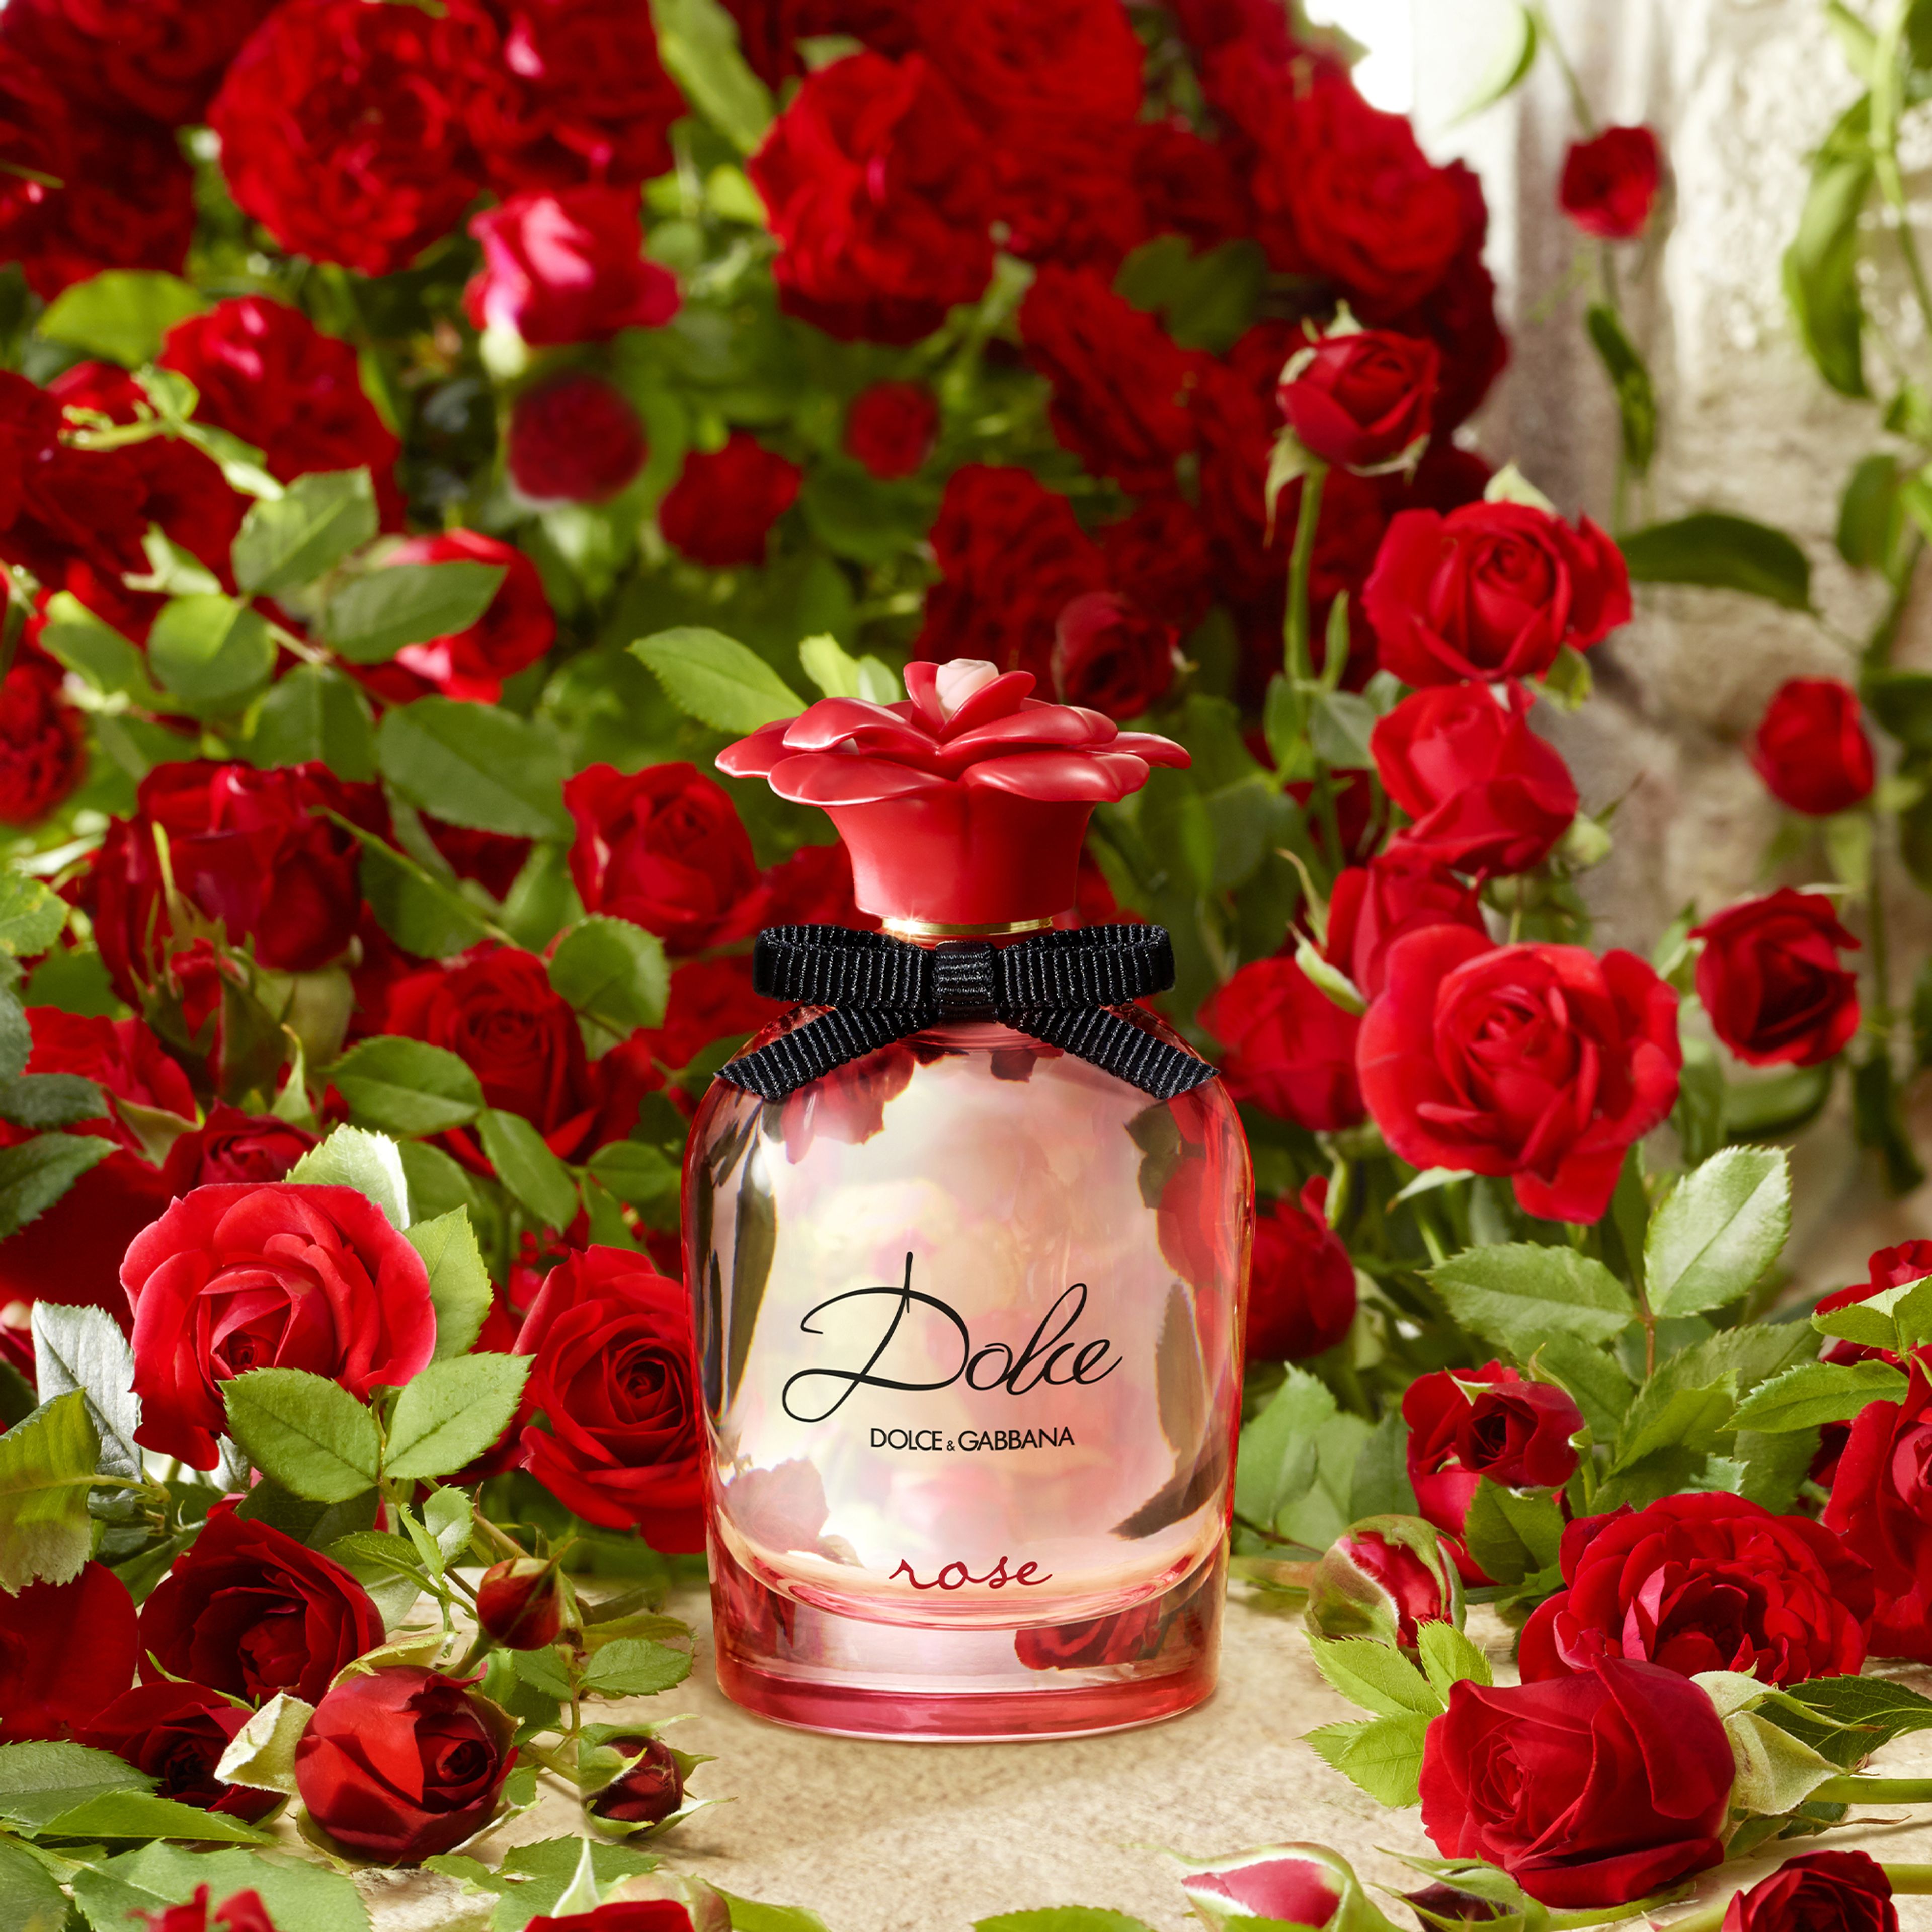 Dolce & Gabbana Dolce Rose Eau De Toilette 3